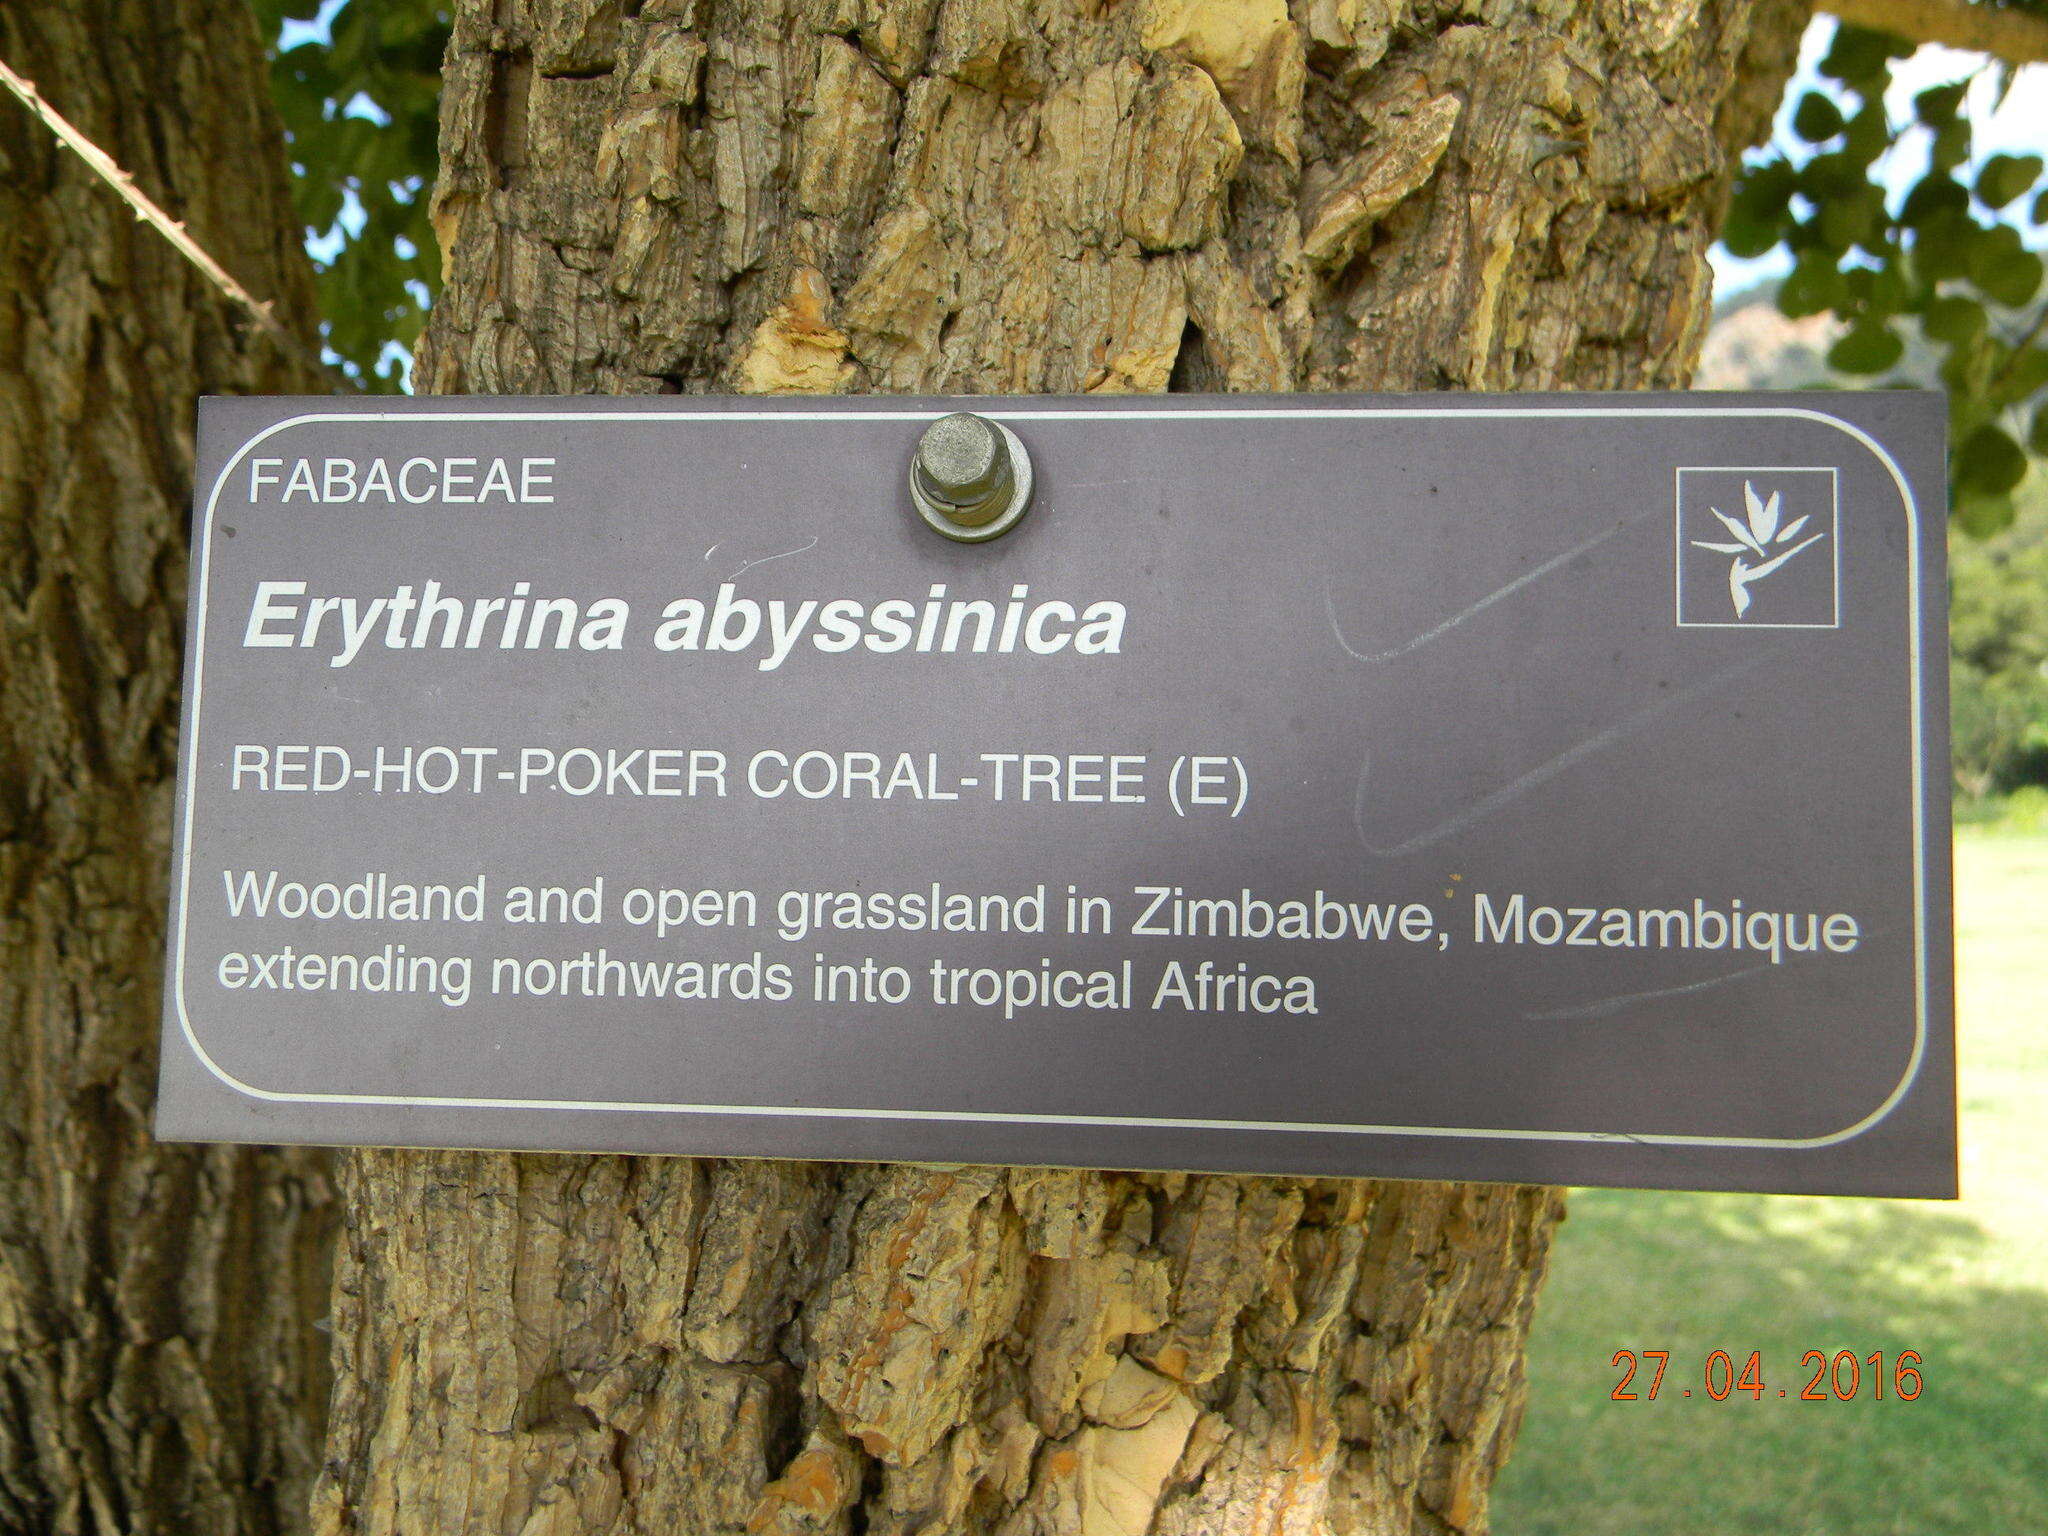 Image of erythrina